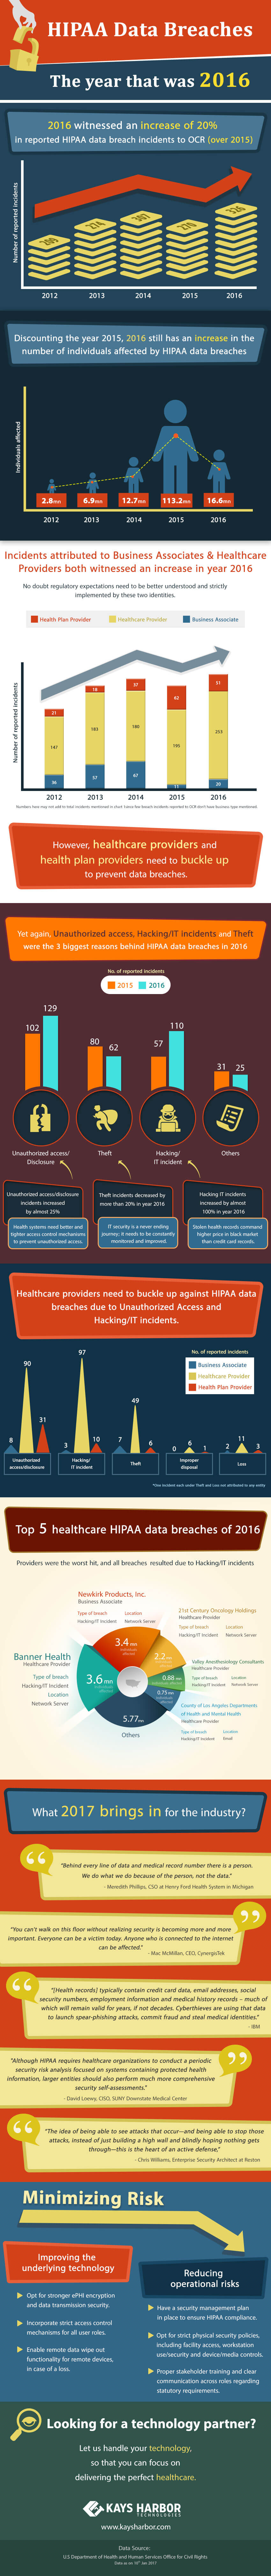 Healthcare Data Breaches in 2016